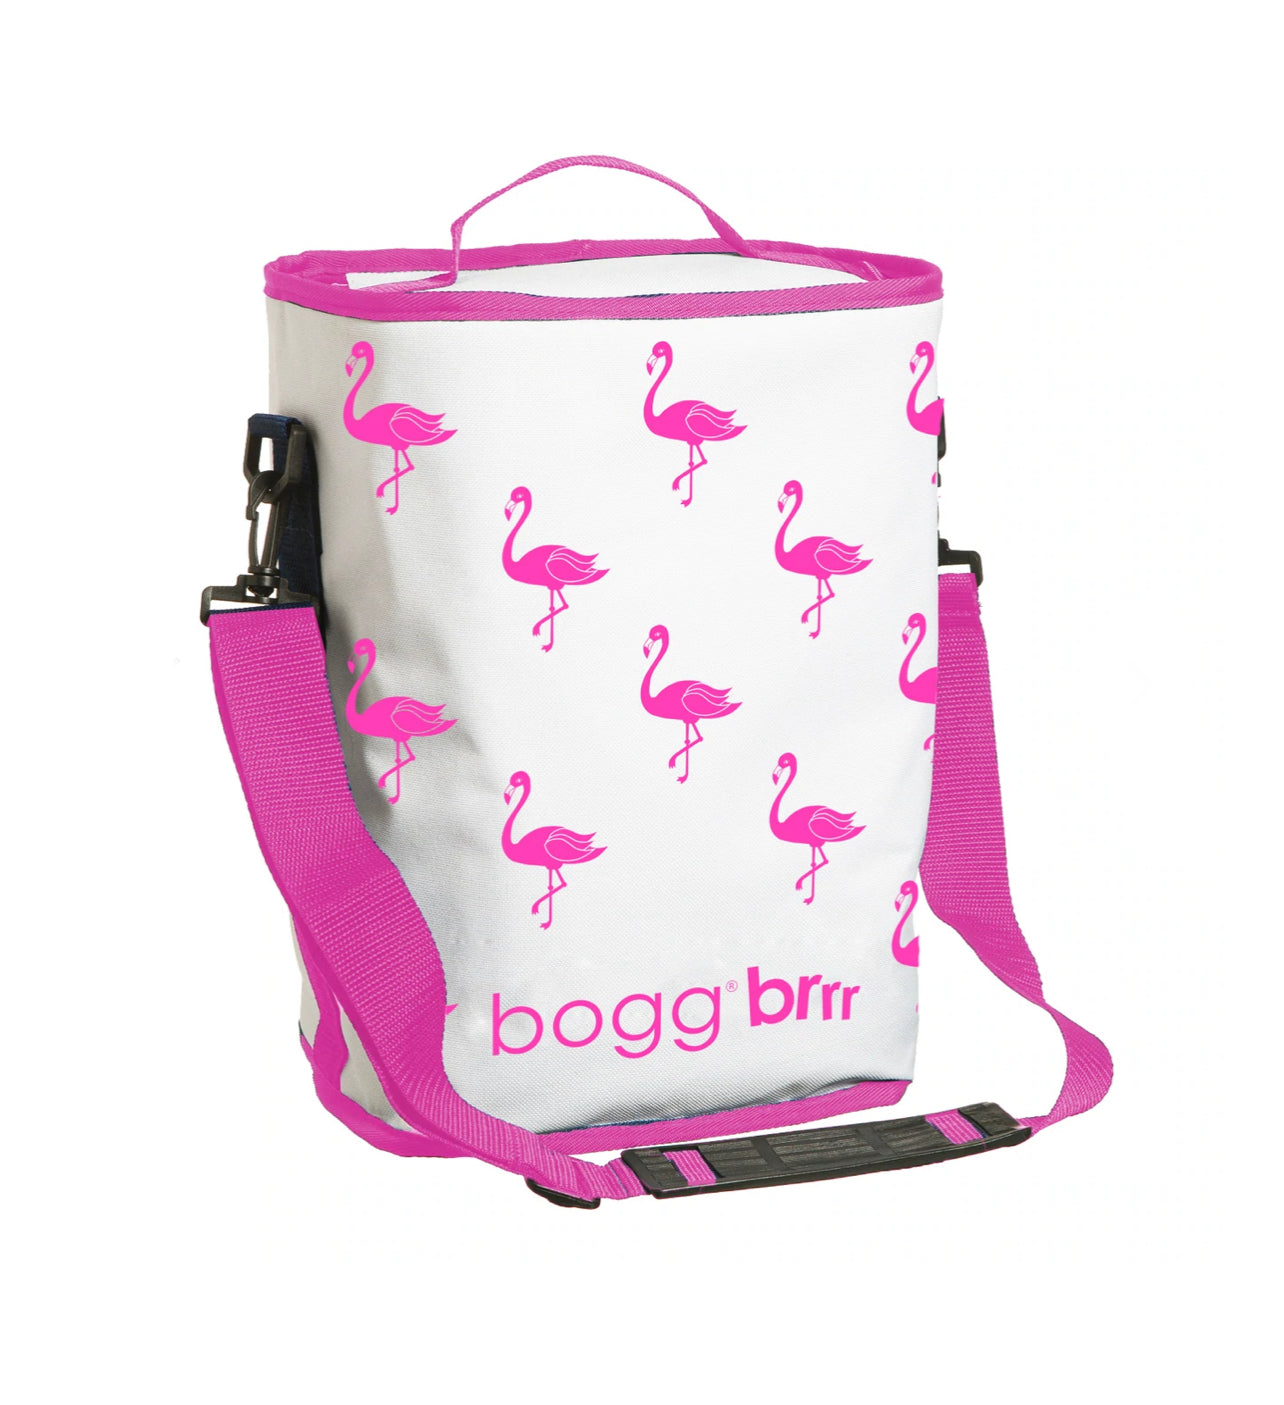 BOGG BAG, Bags, The Original Bogg Bag Red White Blue